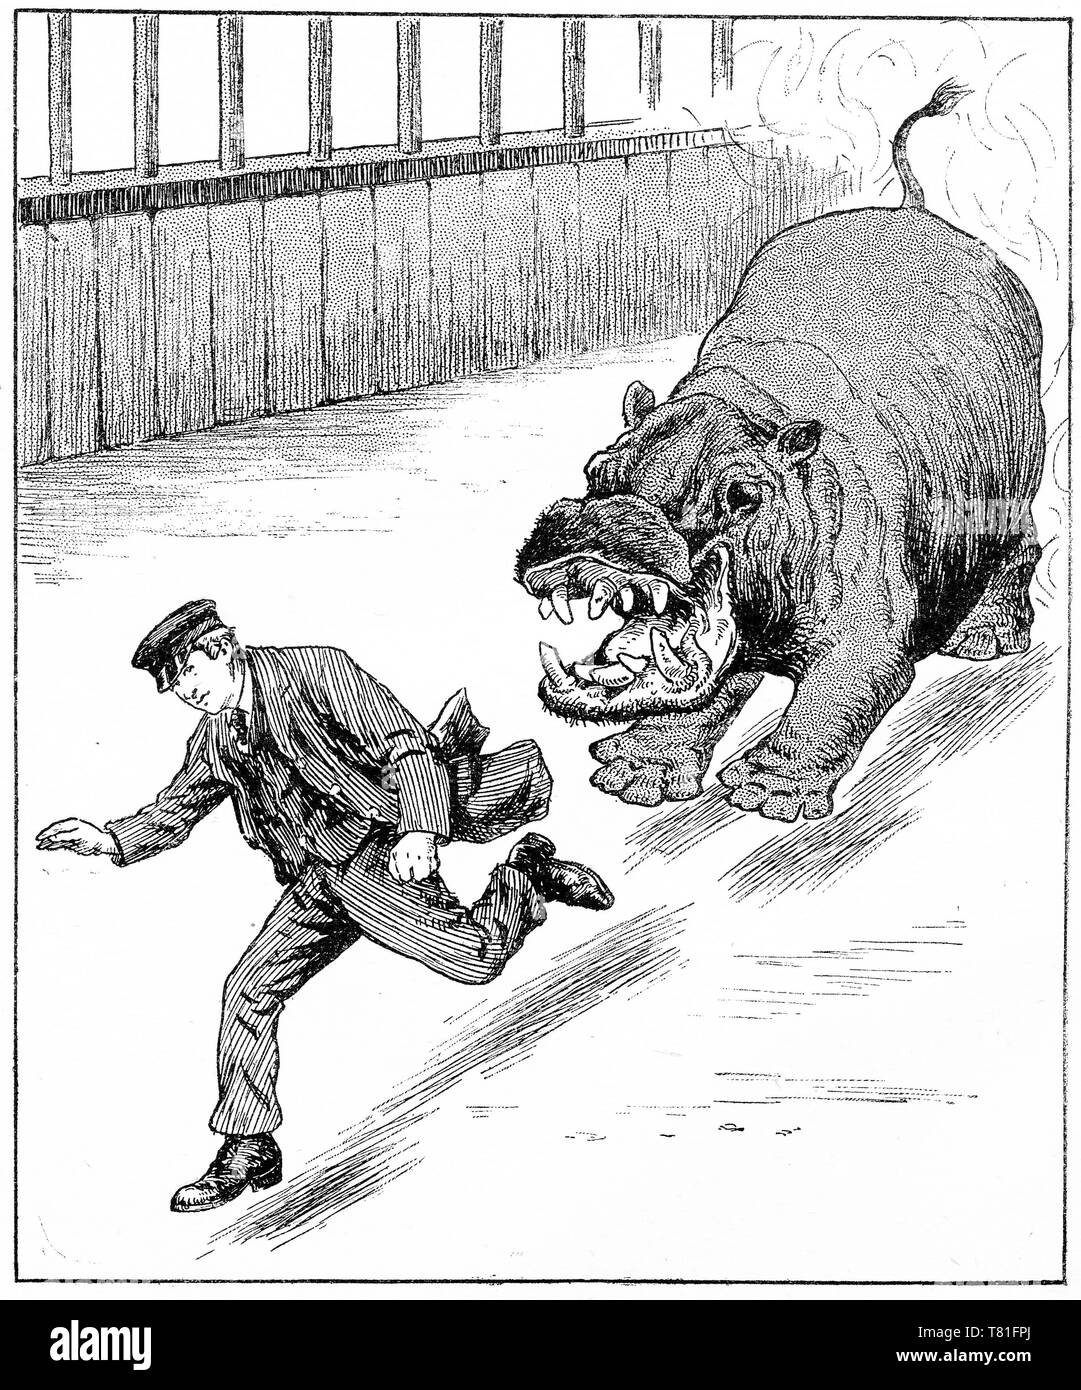 Gravure d'un gardien de zoo d'exécution d'un hippopotame. Chatterbox Magazine, 1917 Banque D'Images